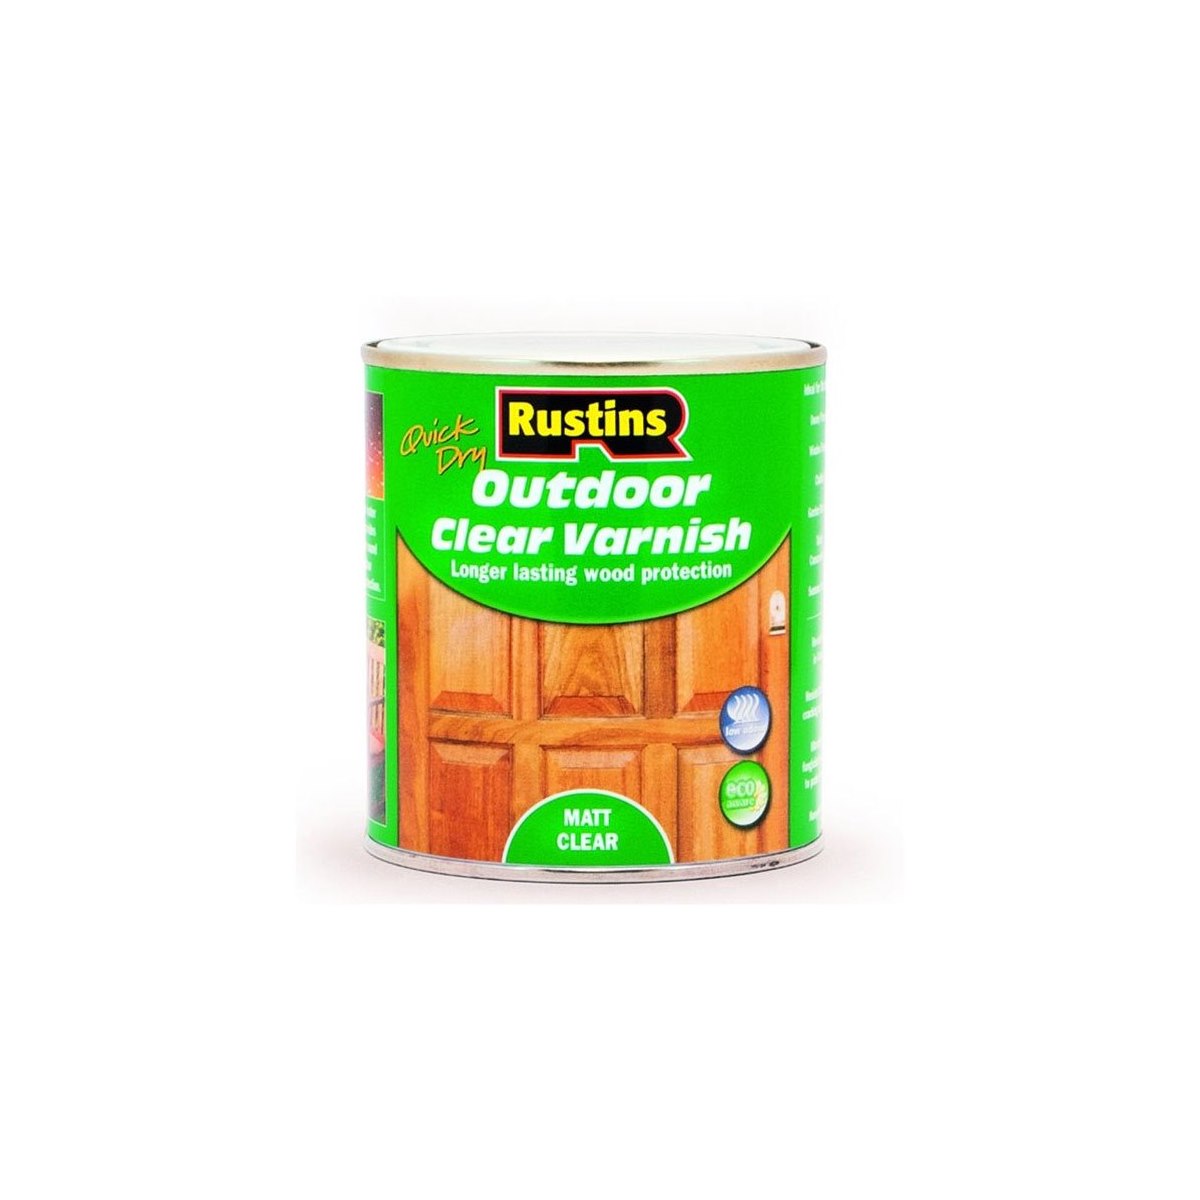 Rustins Quick Dry Outdoor Clear Varnish Matt 1 Litre